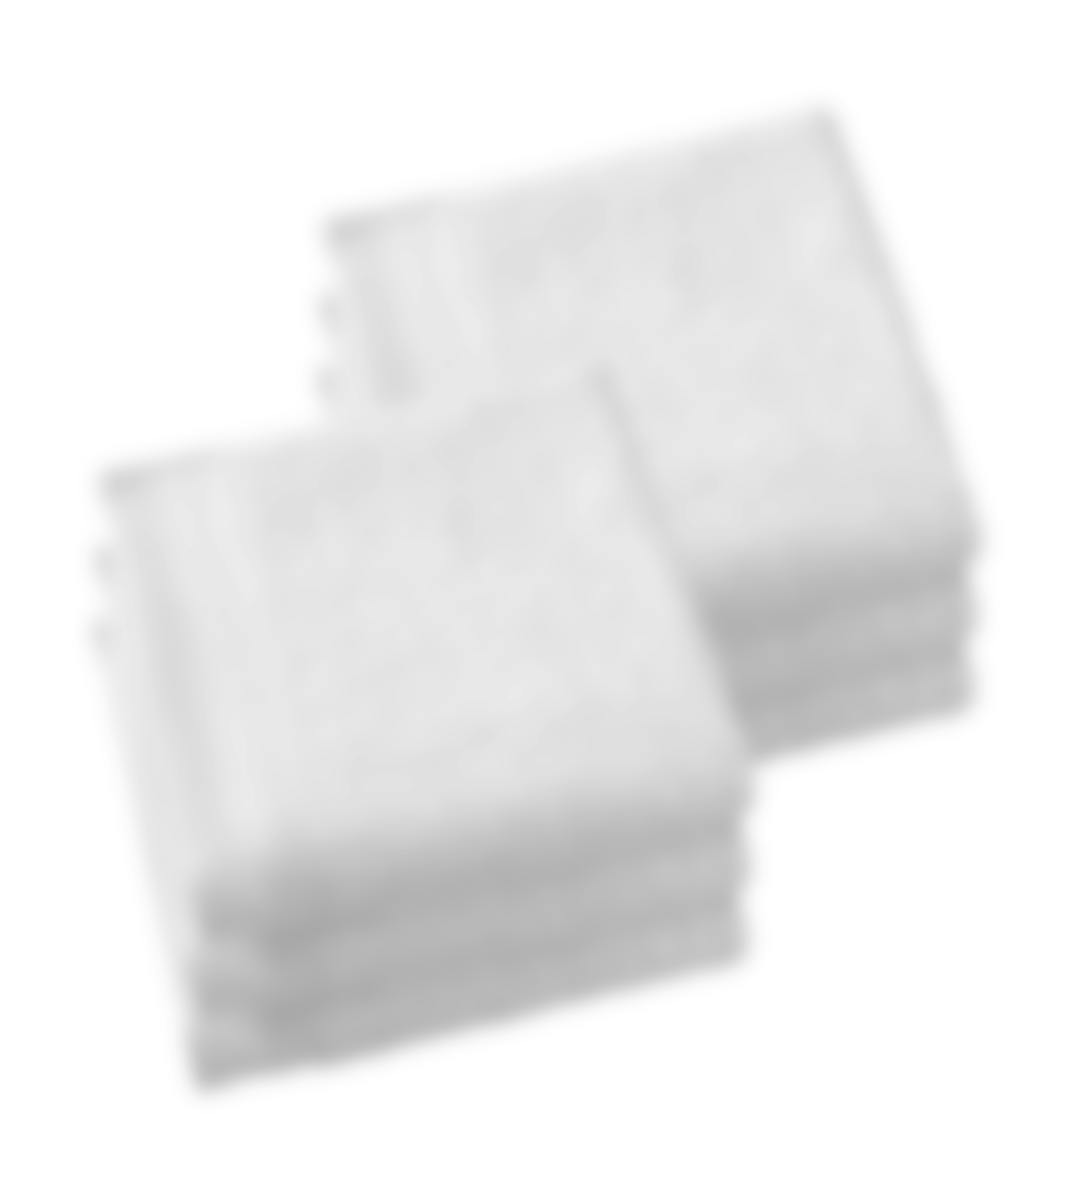 De Witte Lietaer handdoek Contessa white 50 x 100 cm set van 6
